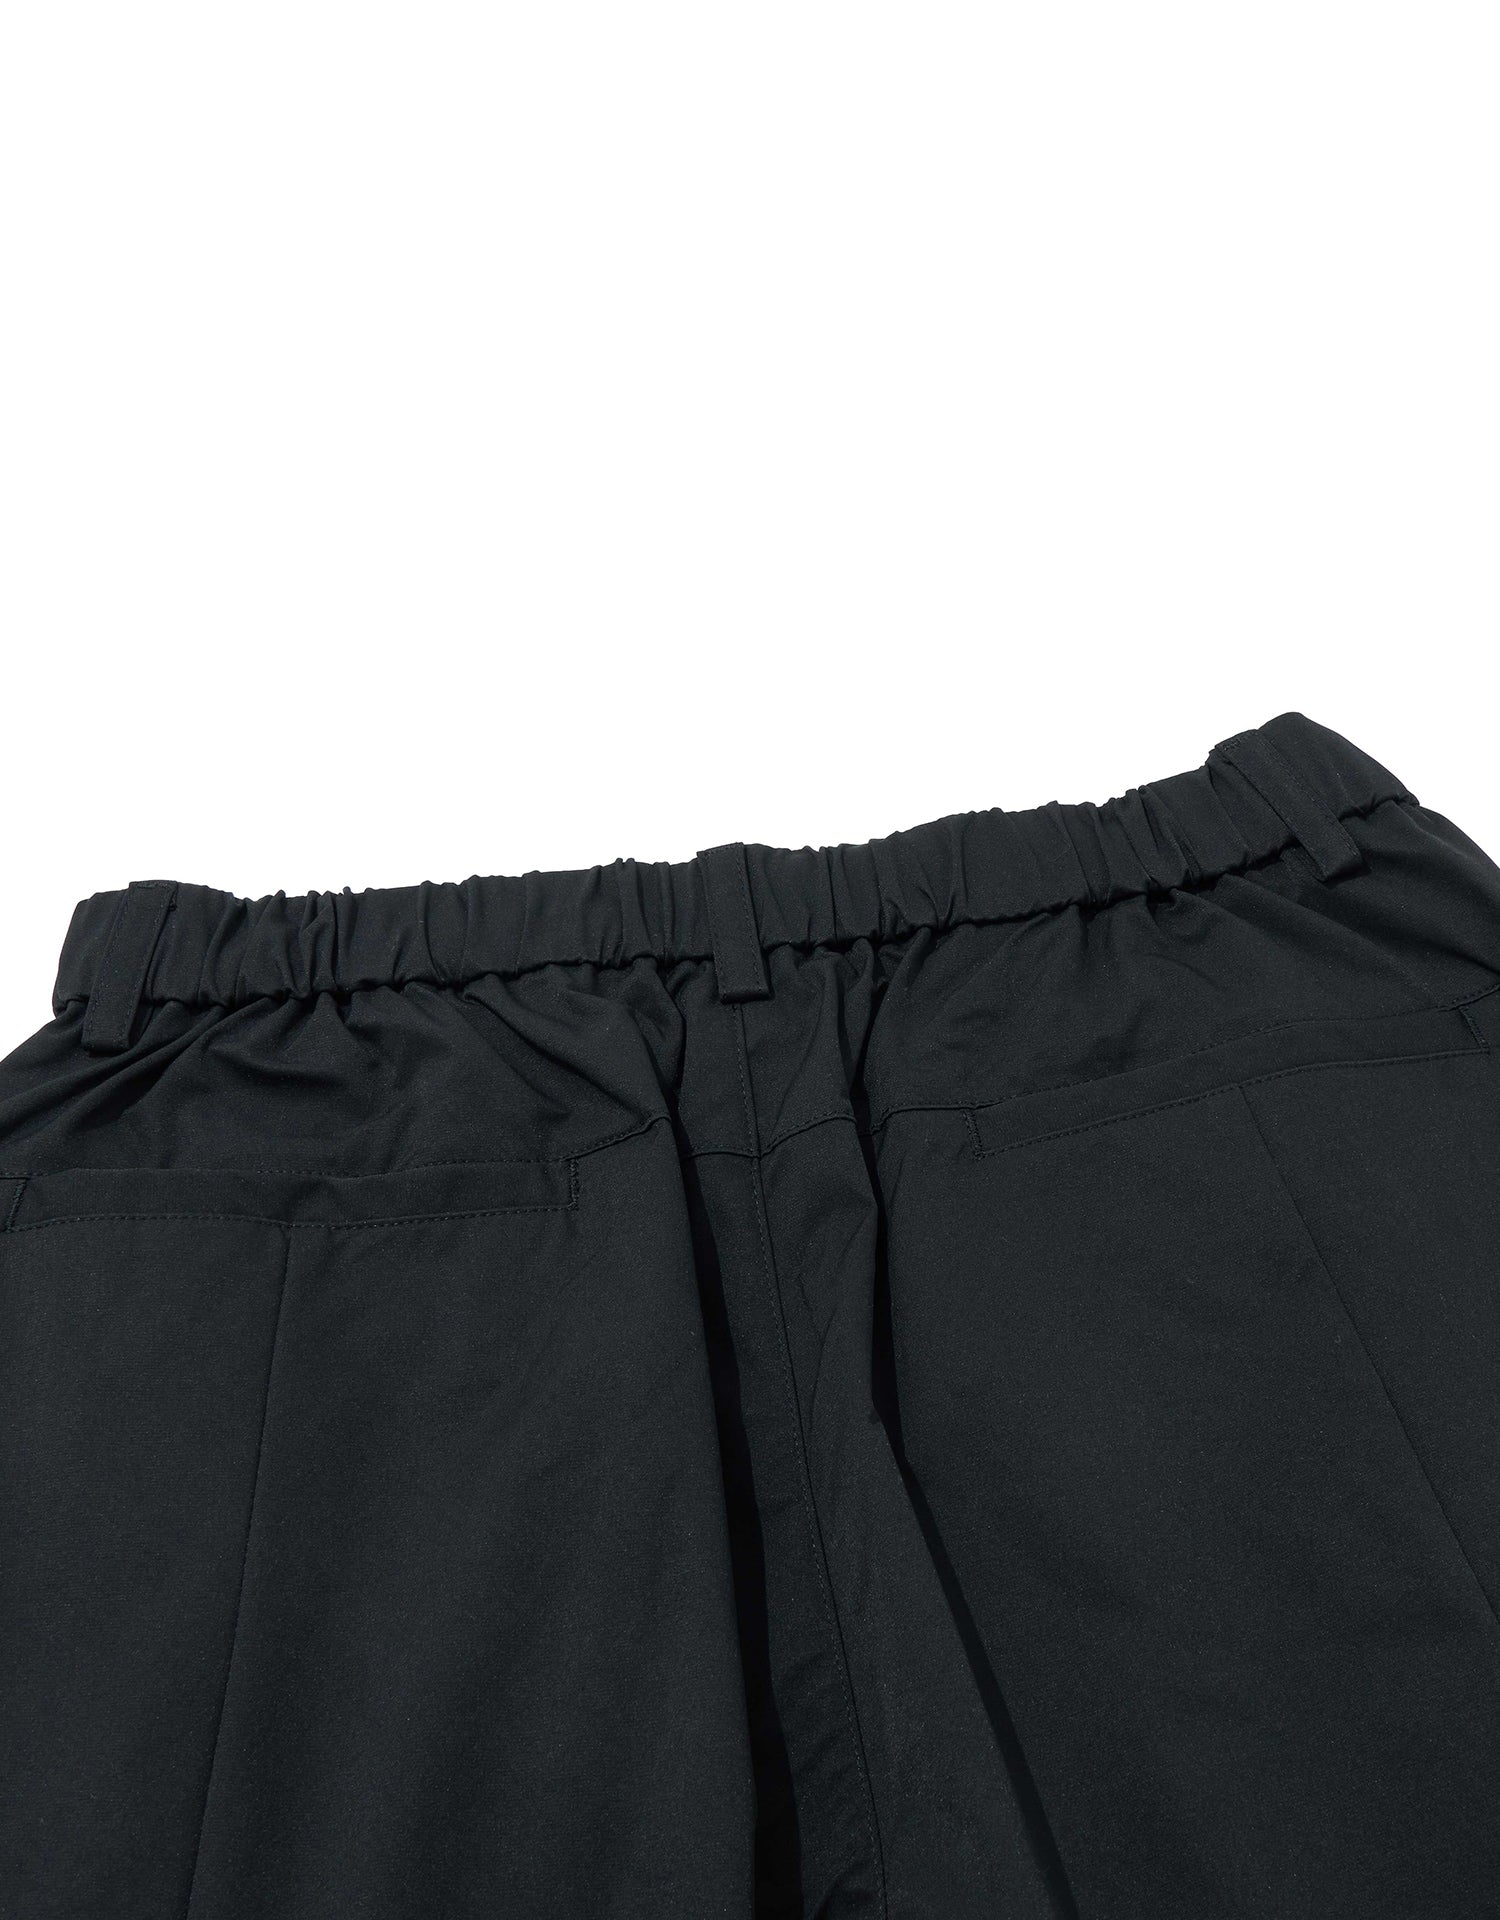 TopBasics Seven Pockets Cargo Shorts